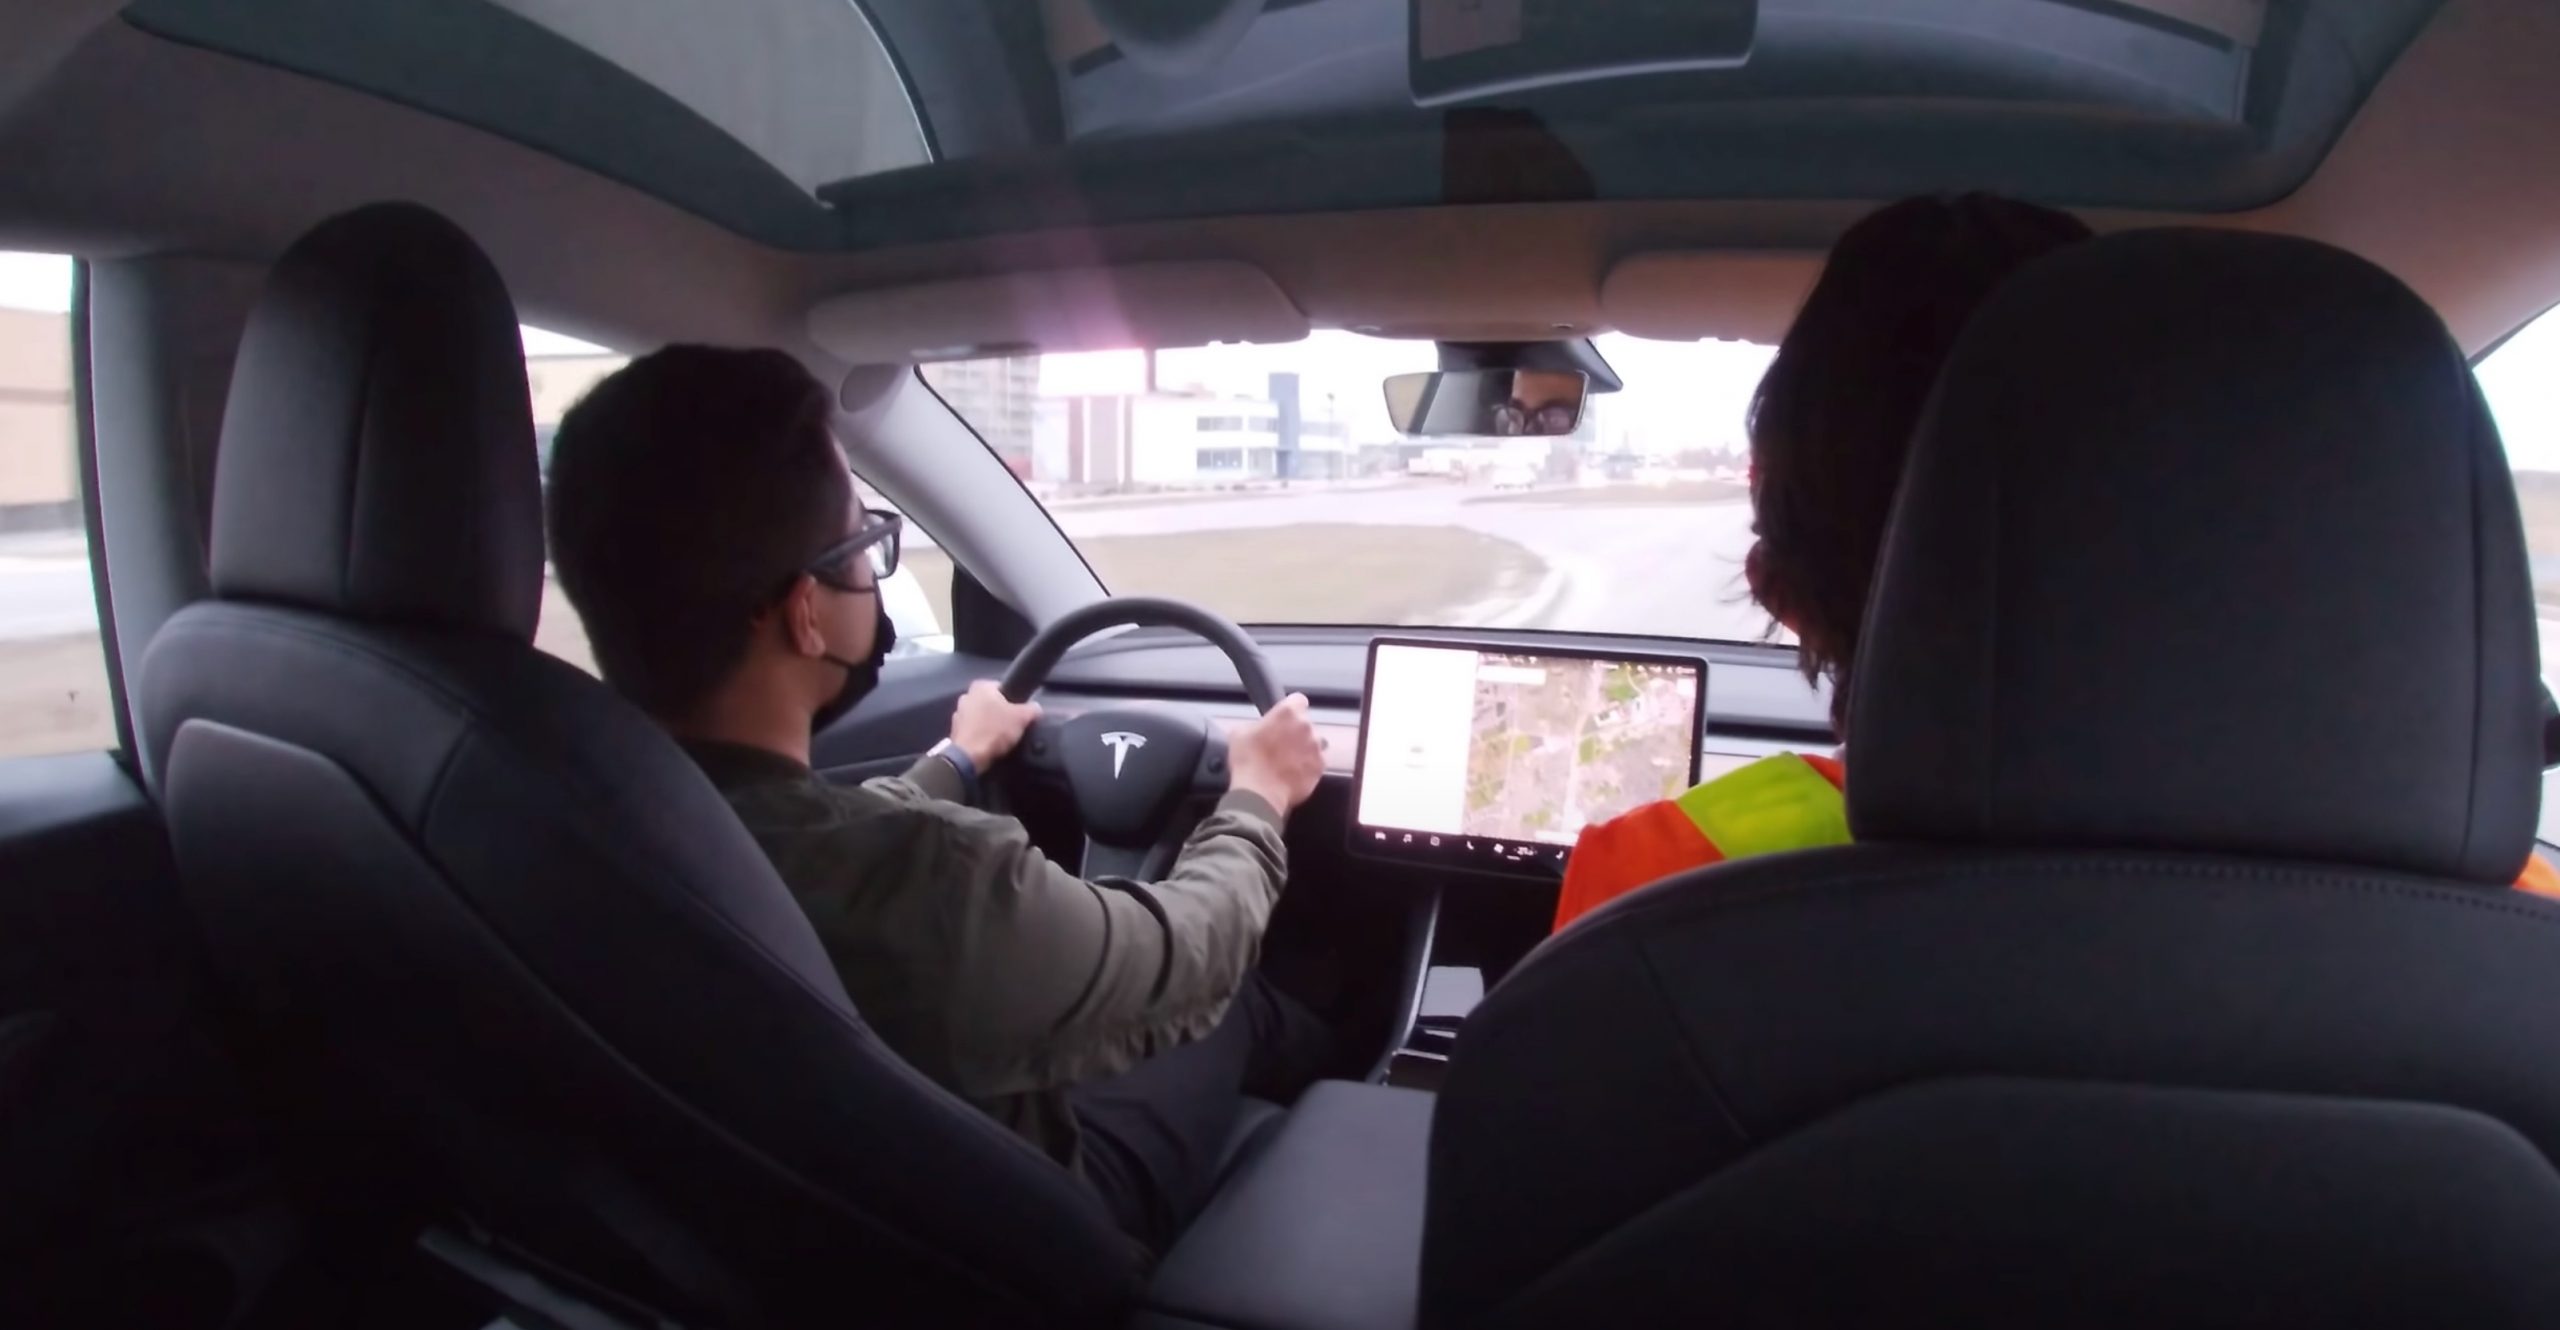 Tesla owner license test on Autopilot